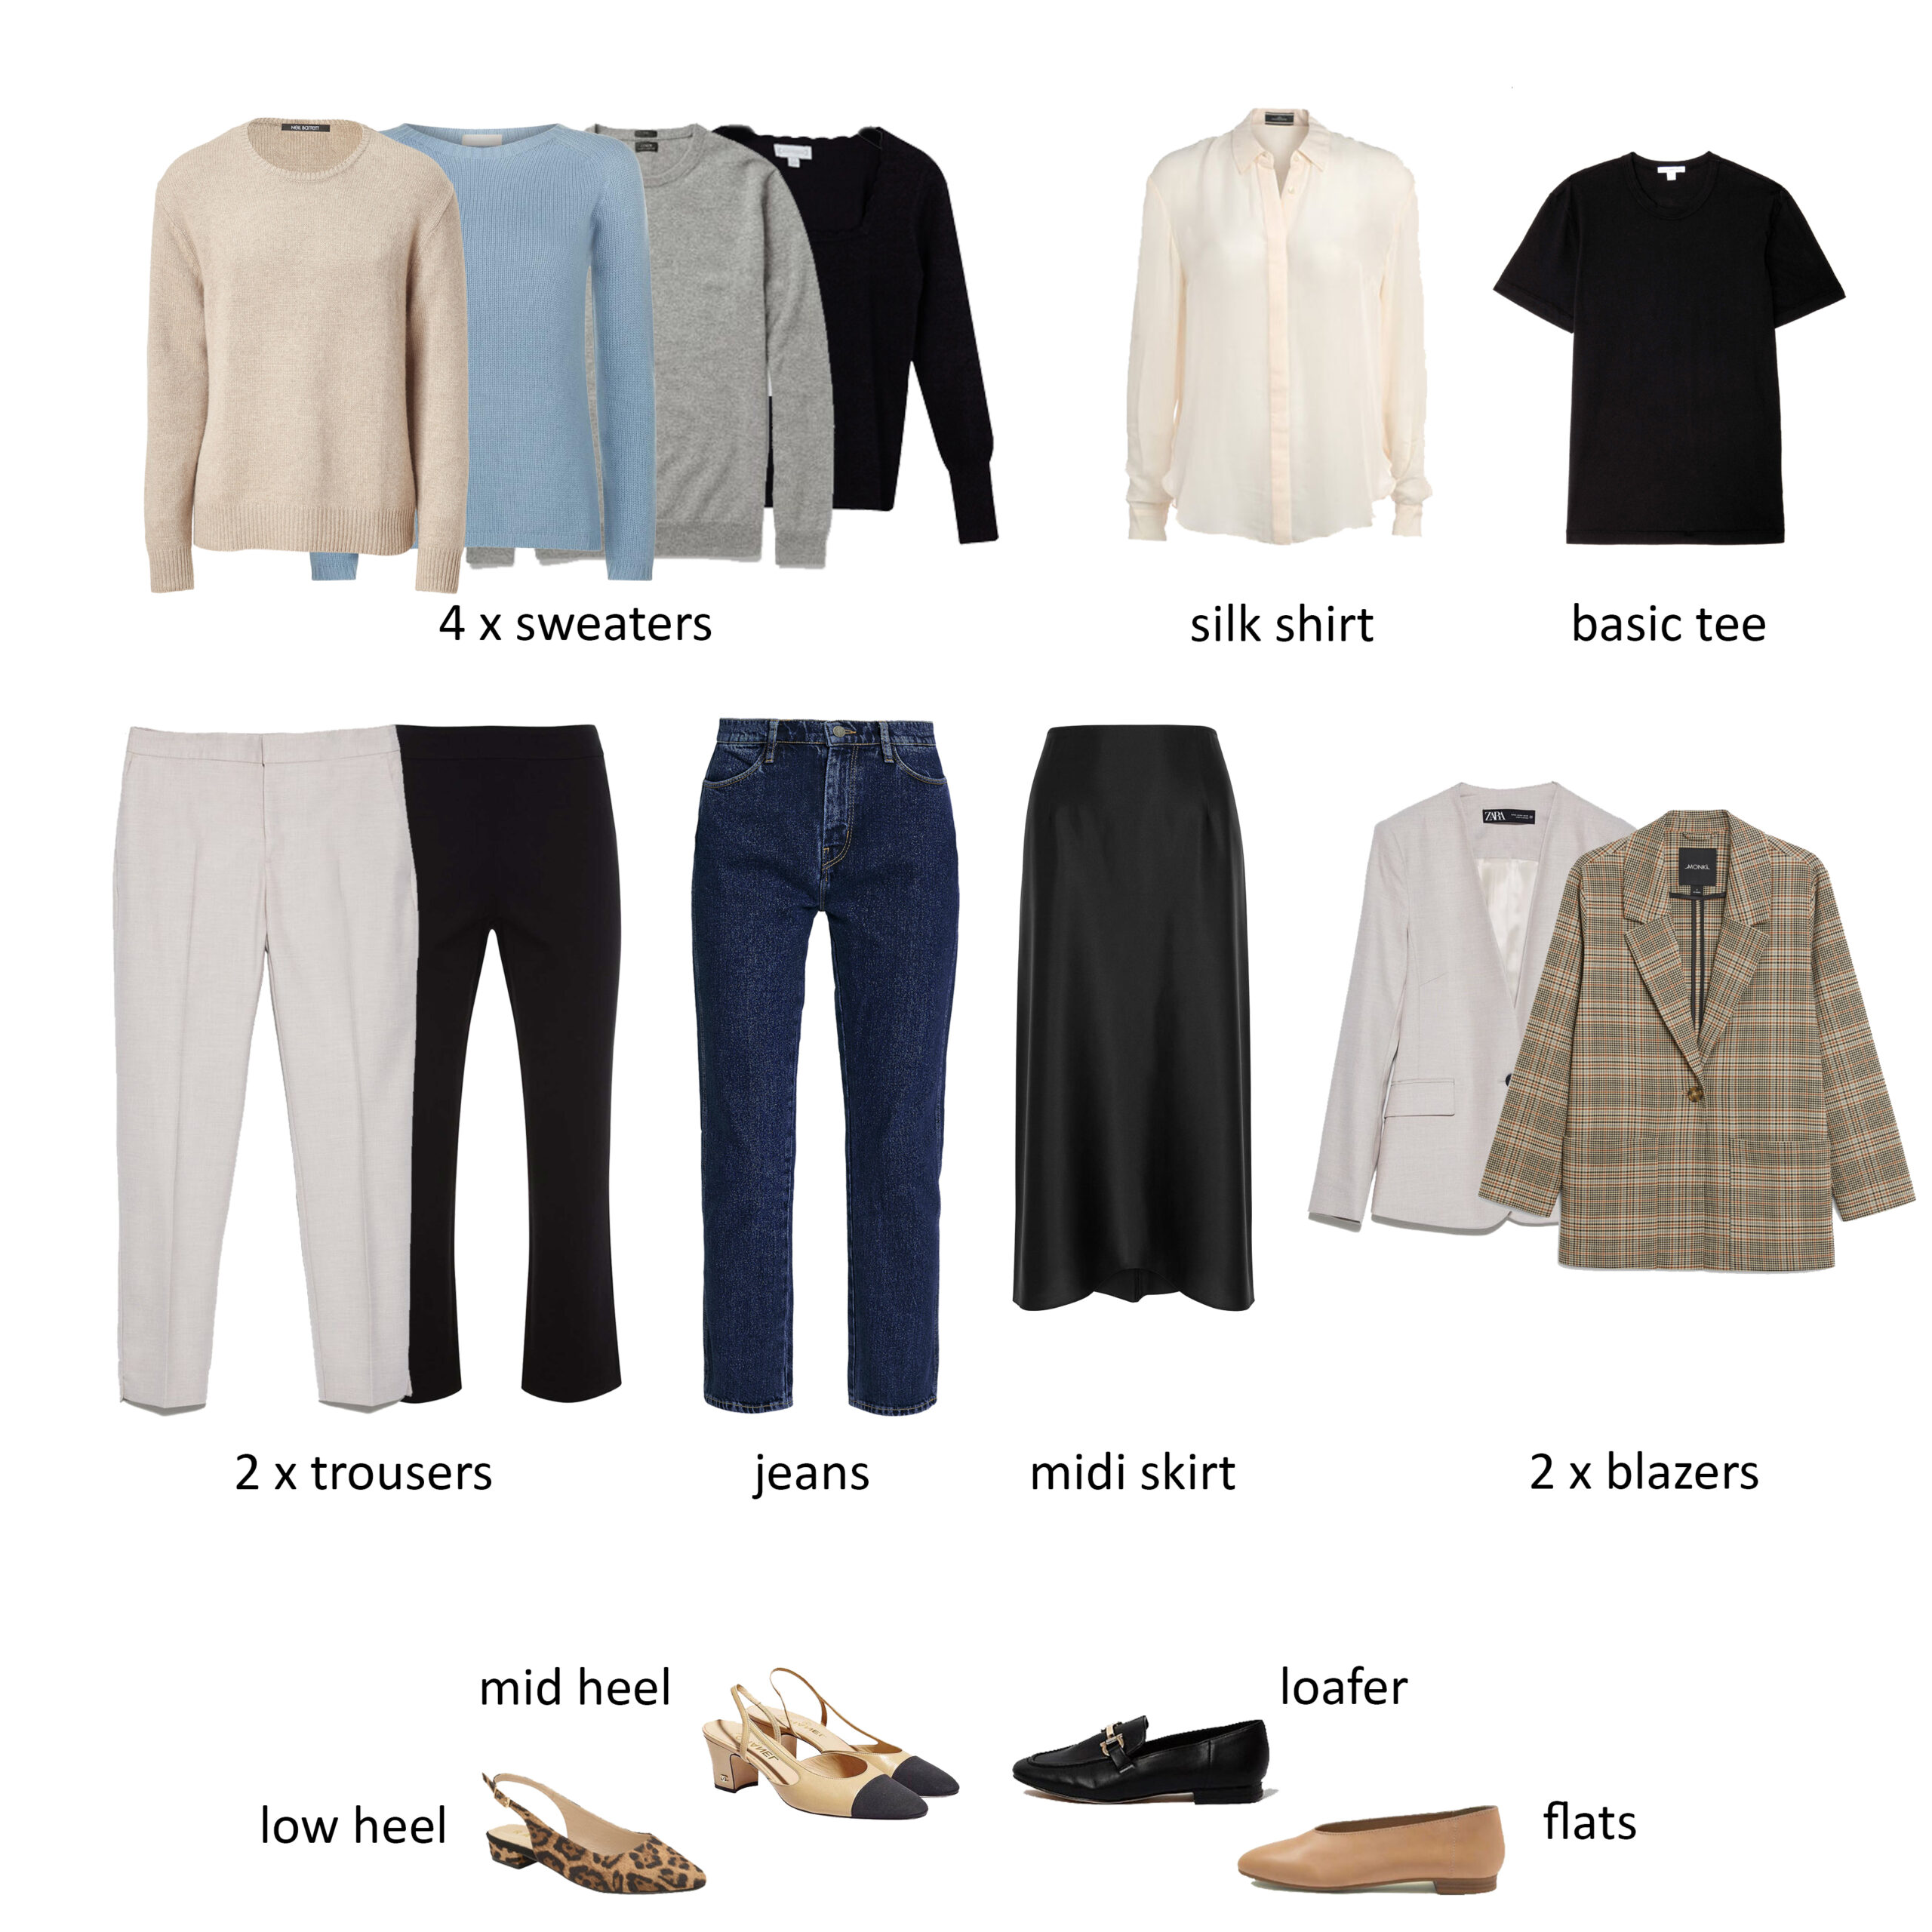 The Essential Work Wardrobe  Work wardrobe essentials, Work wardrobe, Work  outfit